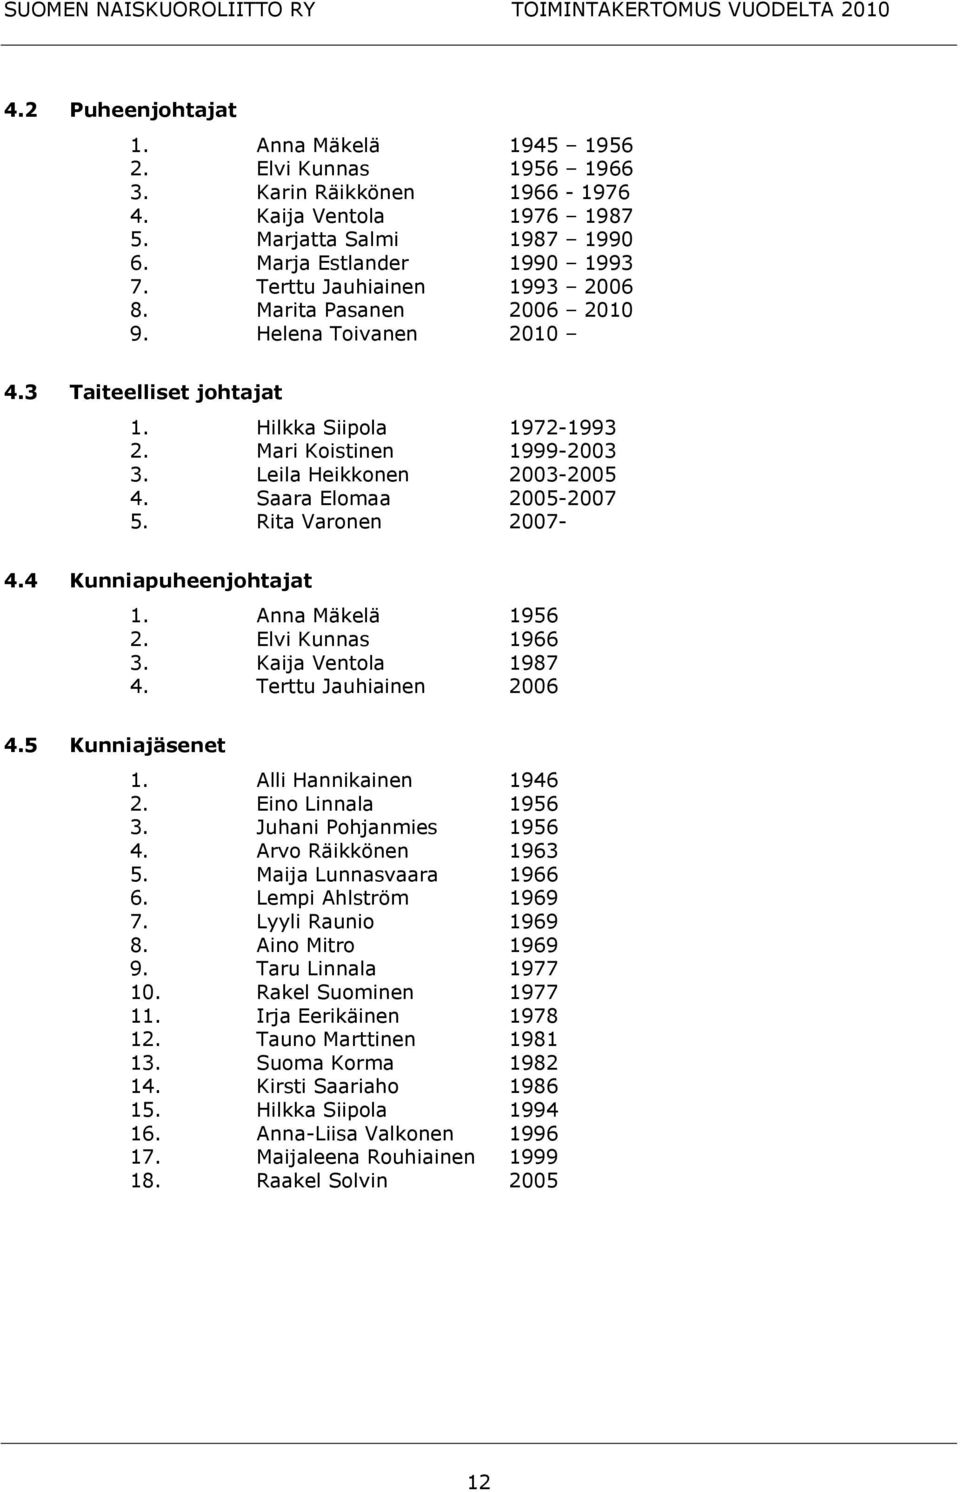 Saara Elomaa 2005-2007 5. Rita Varonen 2007-4.4 Kunniapuheenjohtajat 1. Anna Mäkelä 1956 2. Elvi Kunnas 1966 3. Kaija Ventola 1987 4. Terttu Jauhiainen 2006 4.5 Kunniajäsenet 1.